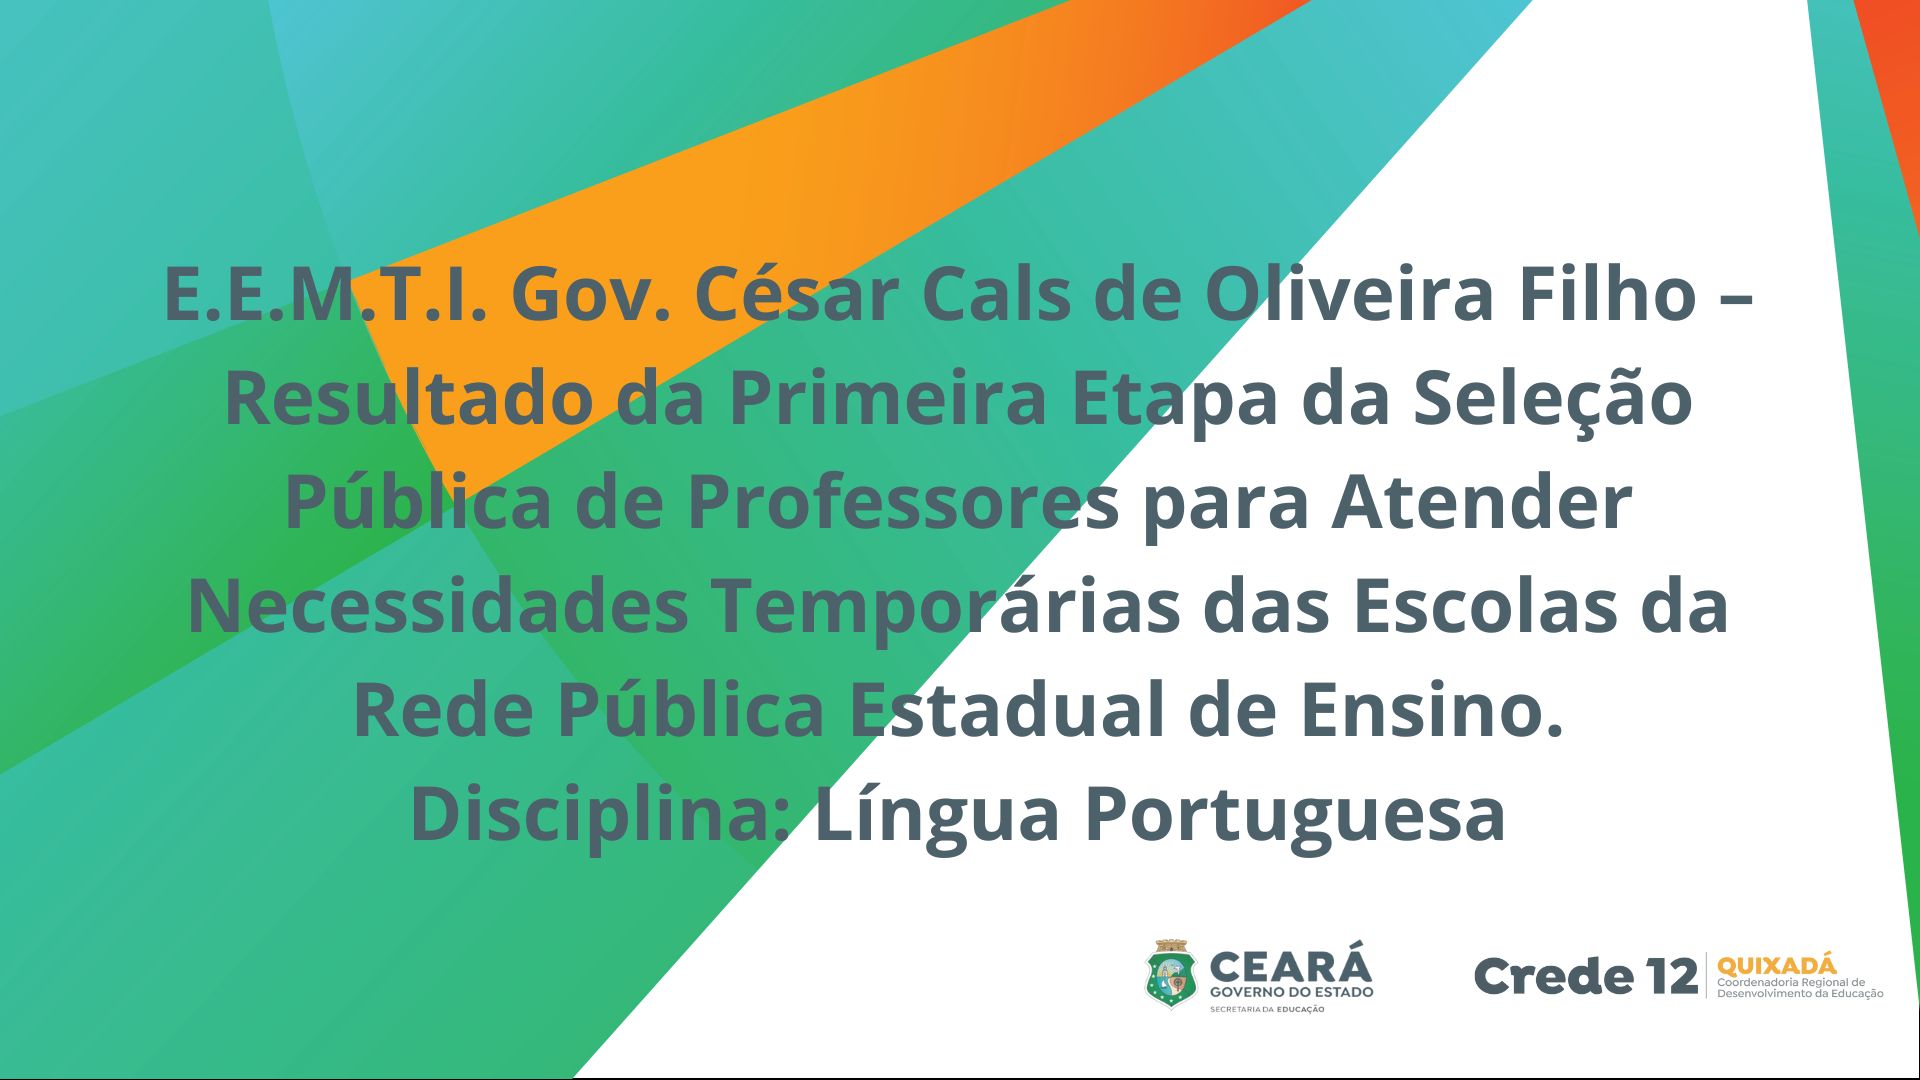 E.E.M.T.I. Gov. César Cals de Oliveira Filho – Resultado da Primeira Etapa da Seleção Pública de Professores